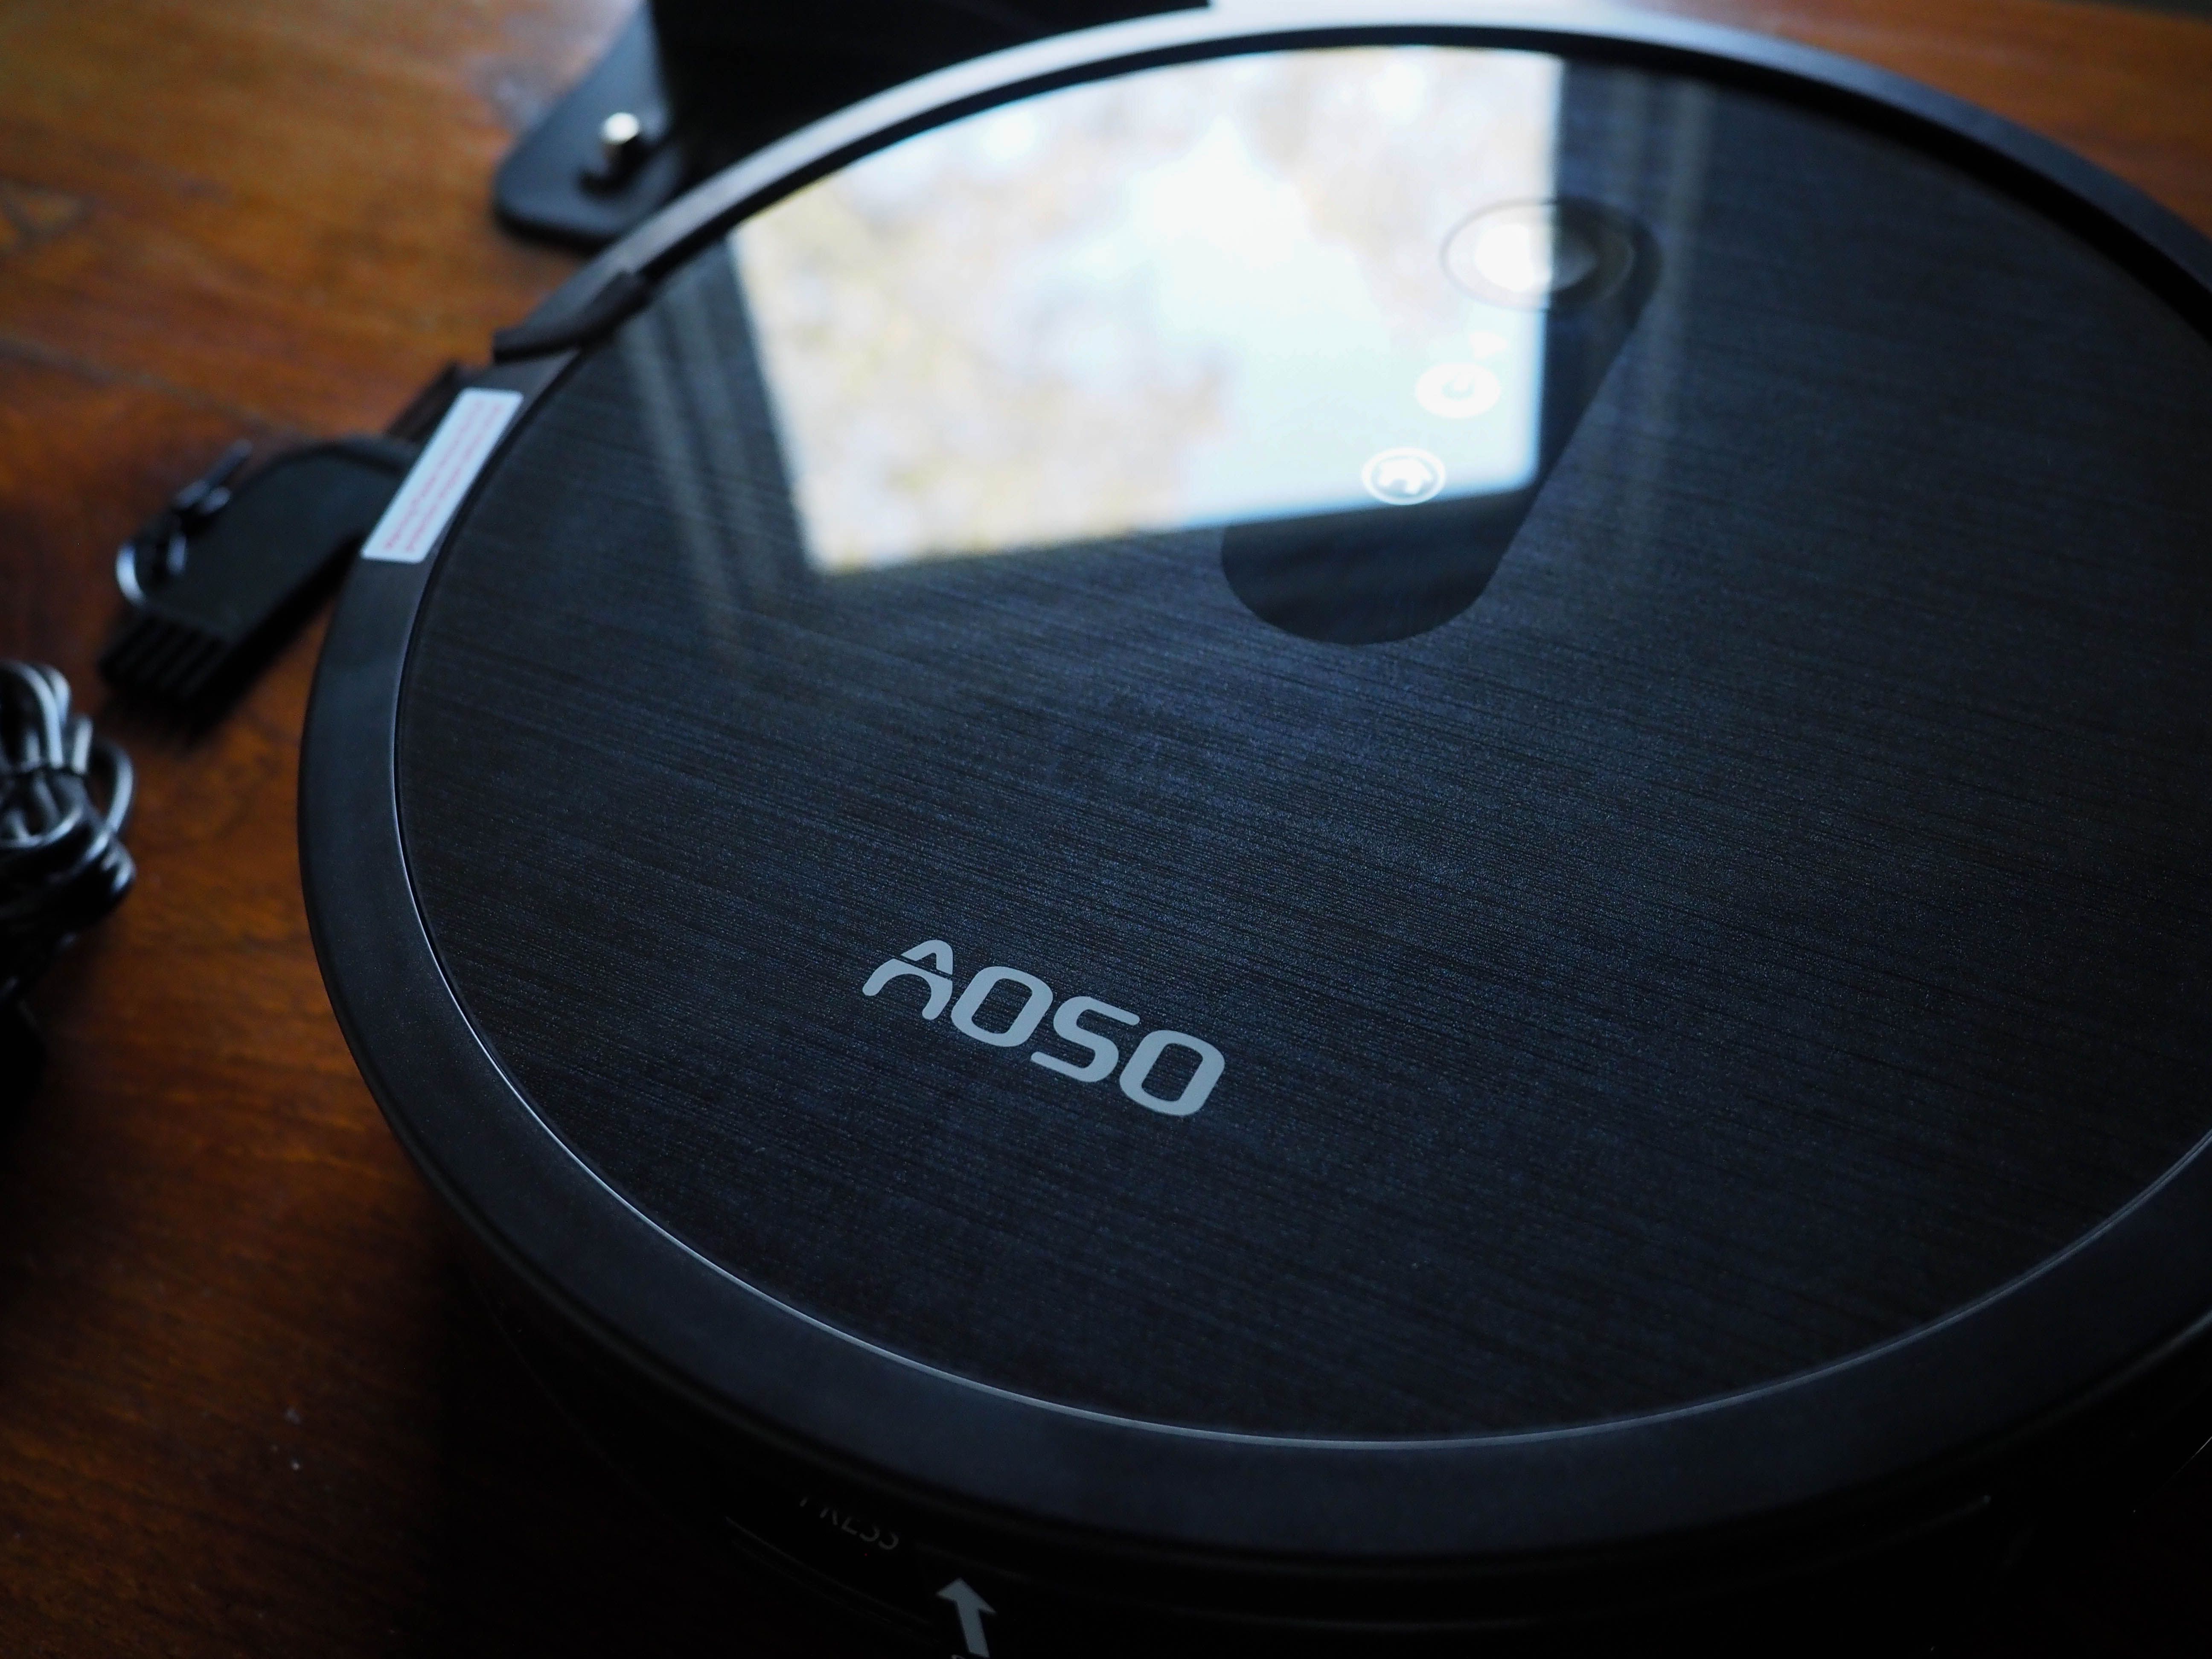 AOSO dustbin release - Recensione del robot aspirapolvere AOSO S3: alta potenza, prezzo economico